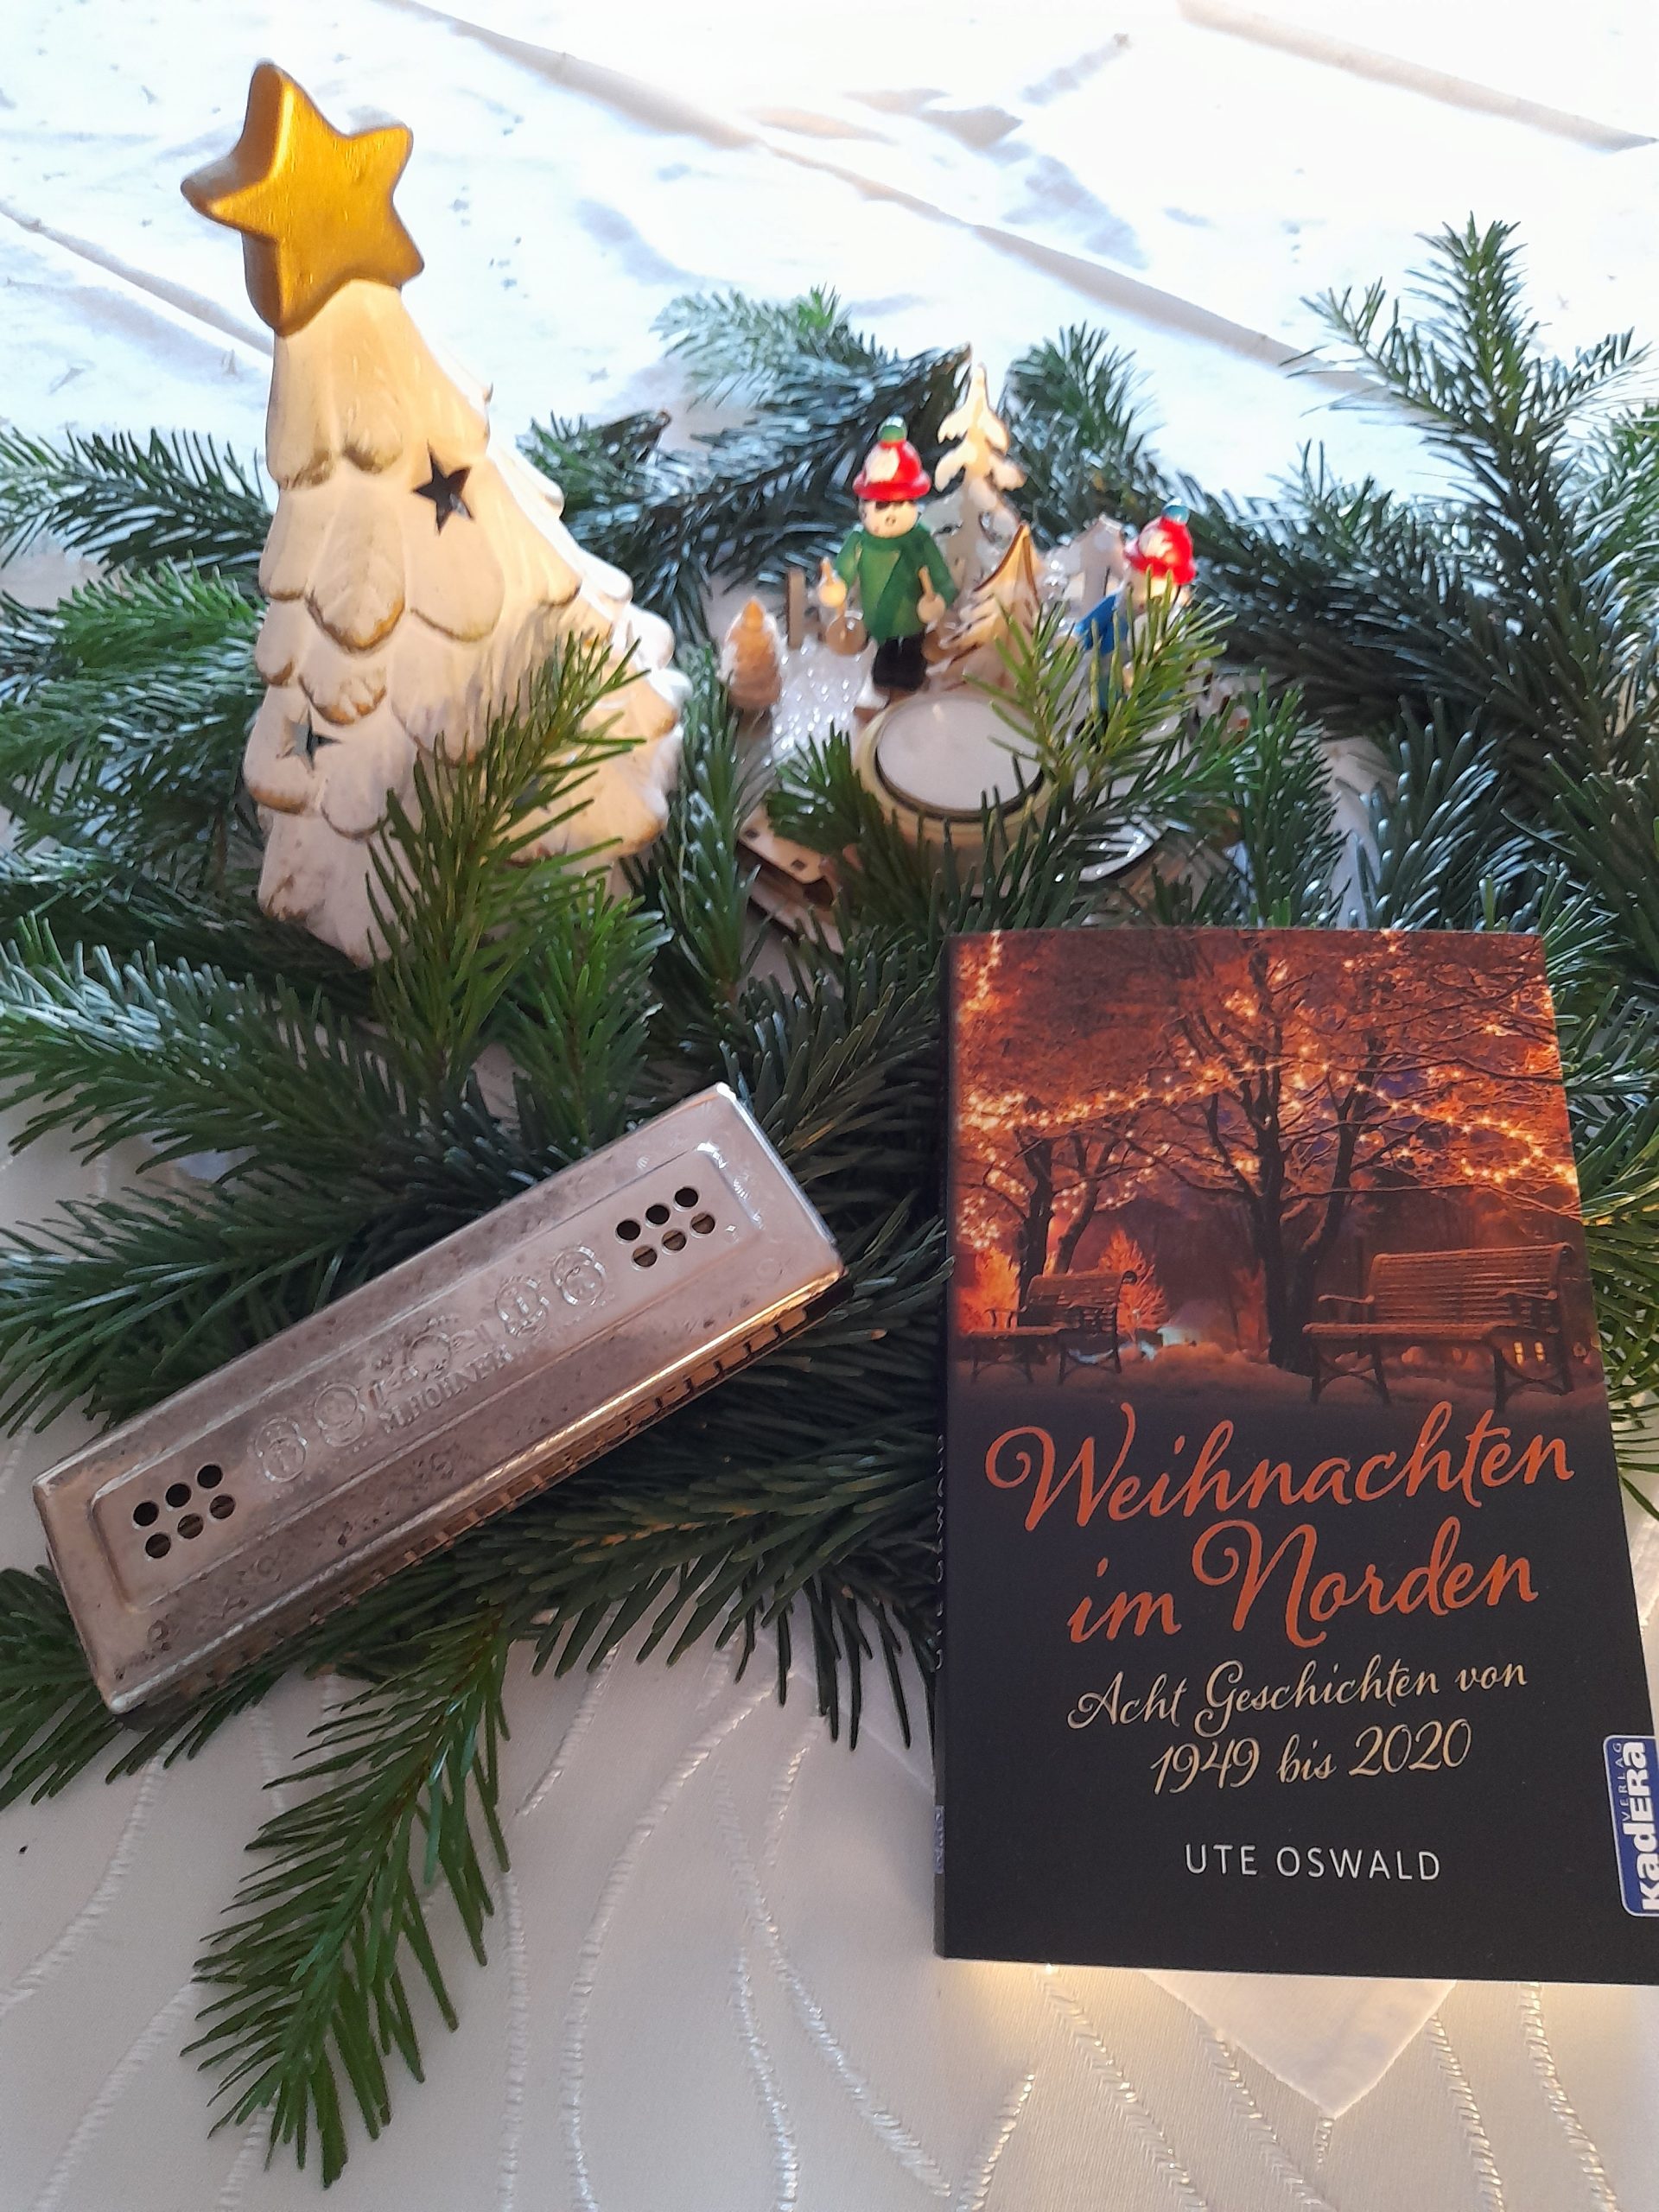 Mundharmonika mit Buch "Weihnachten im Norden" auf Tannenzweigen